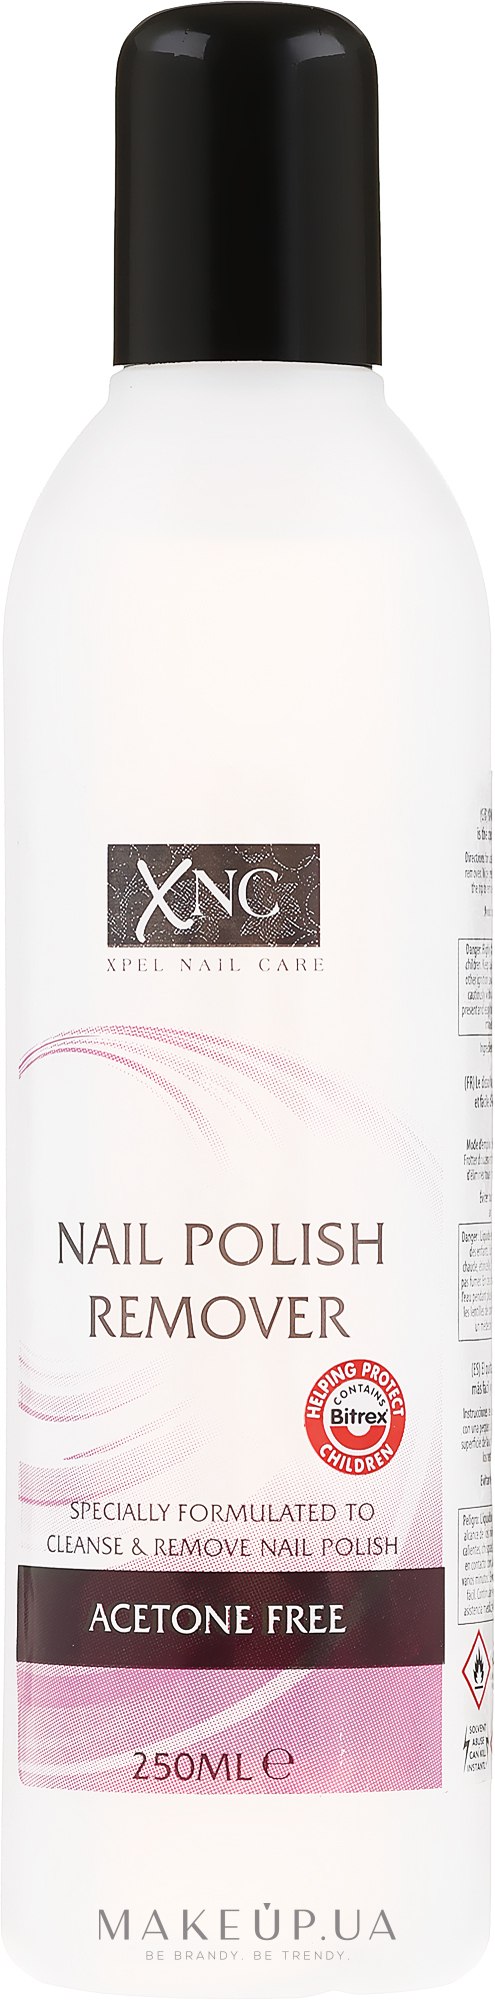 Рідина для зняття лаку - Xpel Marketing Ltd Xnc Nail Polish Remover Acetone Free — фото 250ml